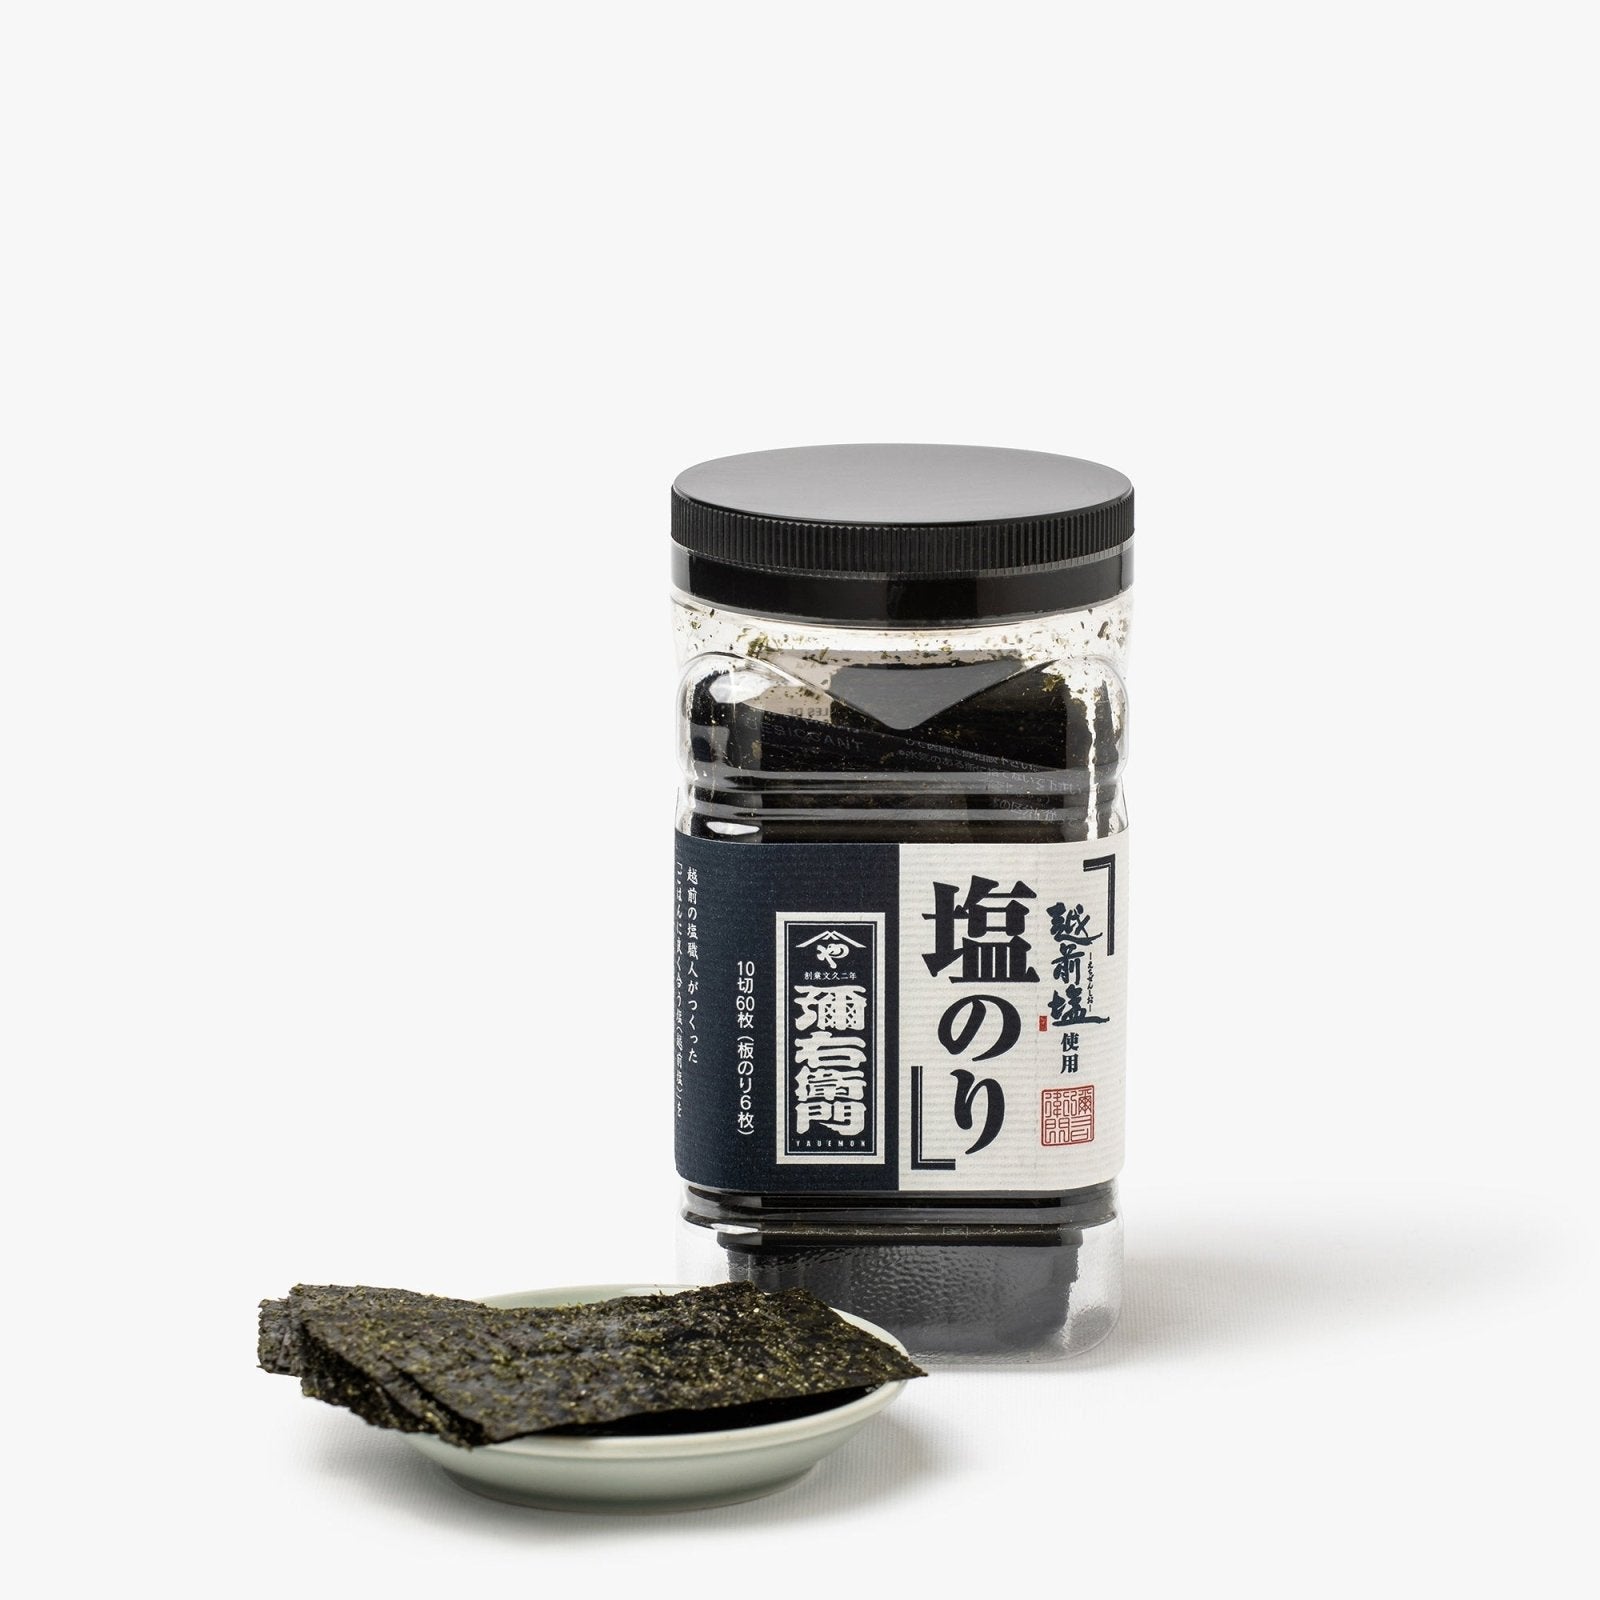 Petites feuilles d'algue shio nori grillées et salées - 23g - Wataya - iRASSHAi